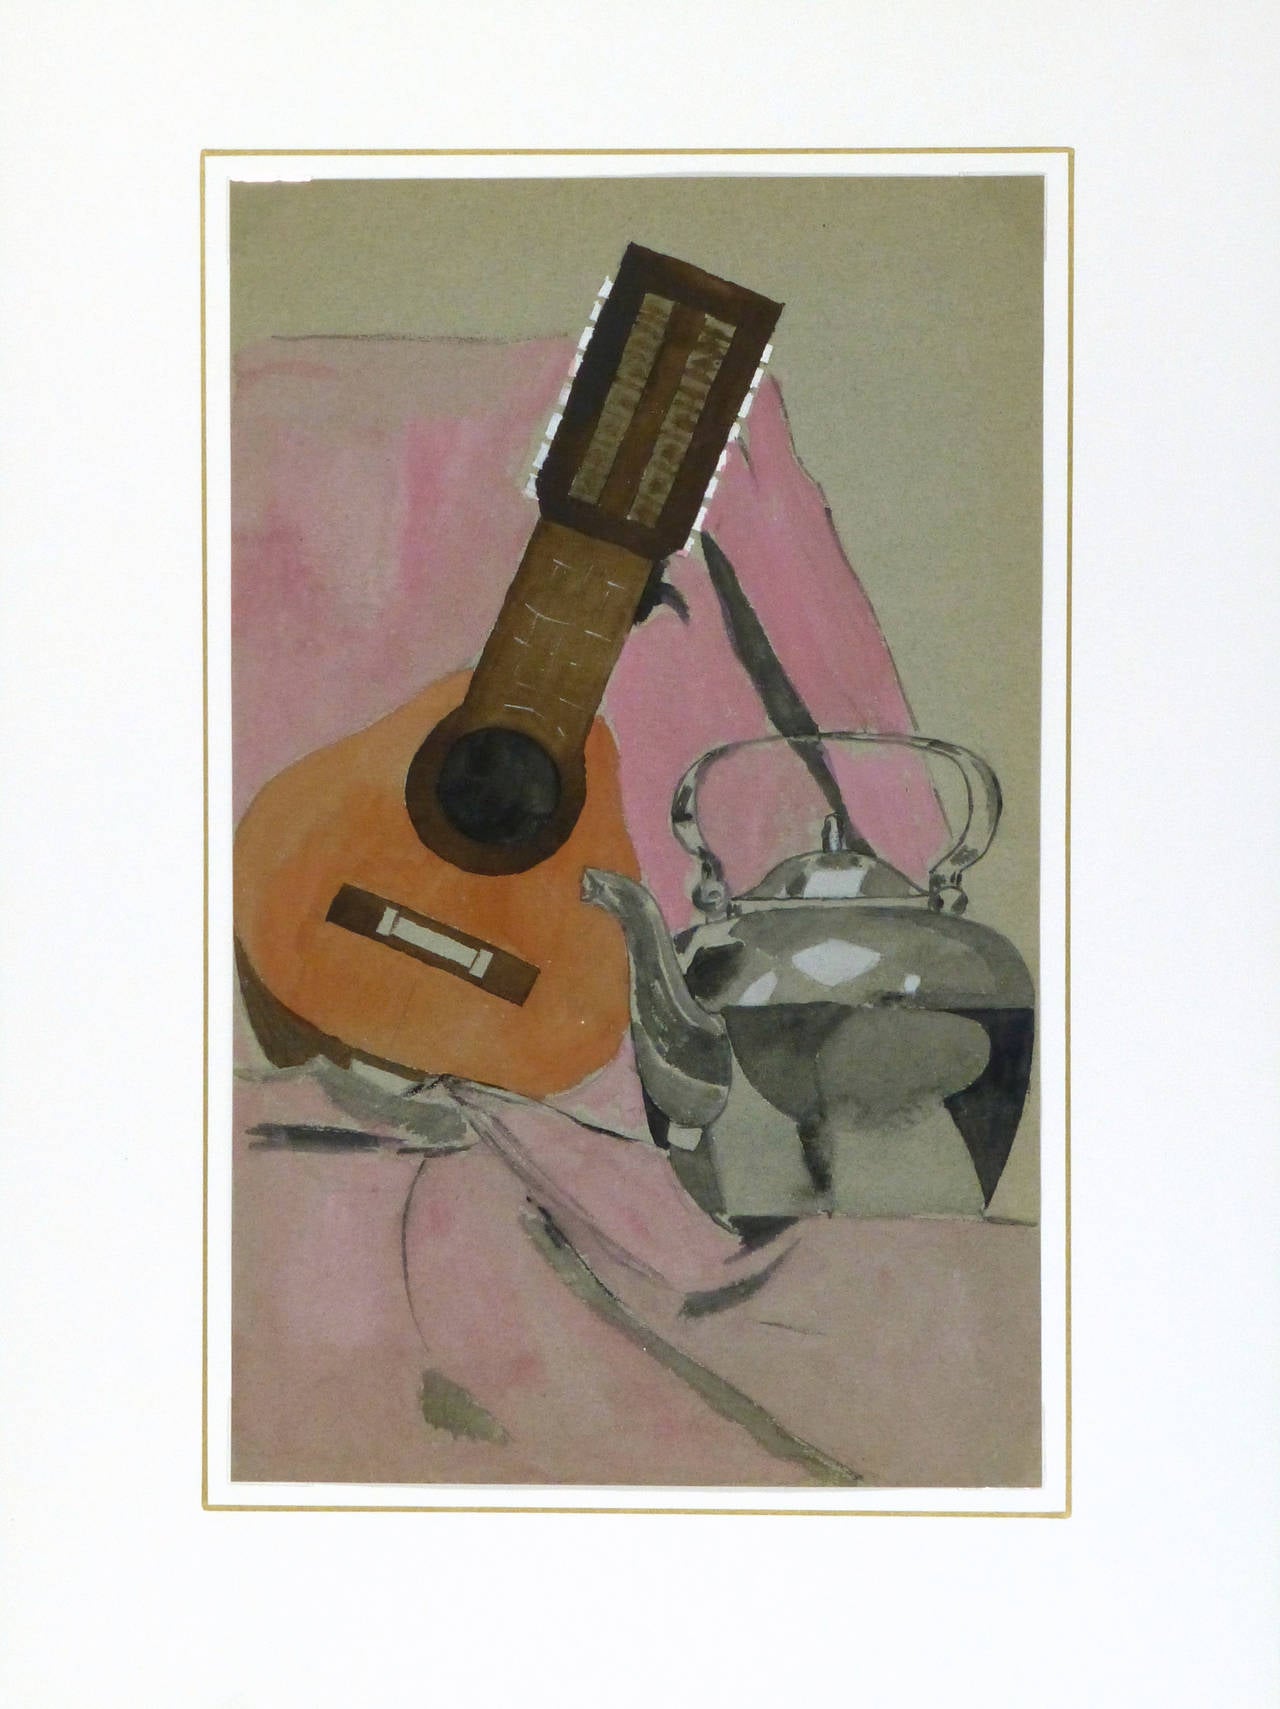 Französische Aquarell- und Kohlestilllebenstudie mit einem glänzenden Teekessel und einer Mandoline, um 1930.

Originales, einzigartiges Vintage-Kunstwerk auf Papier, das auf einem weißen Passepartout mit Goldrand präsentiert wird und in einen